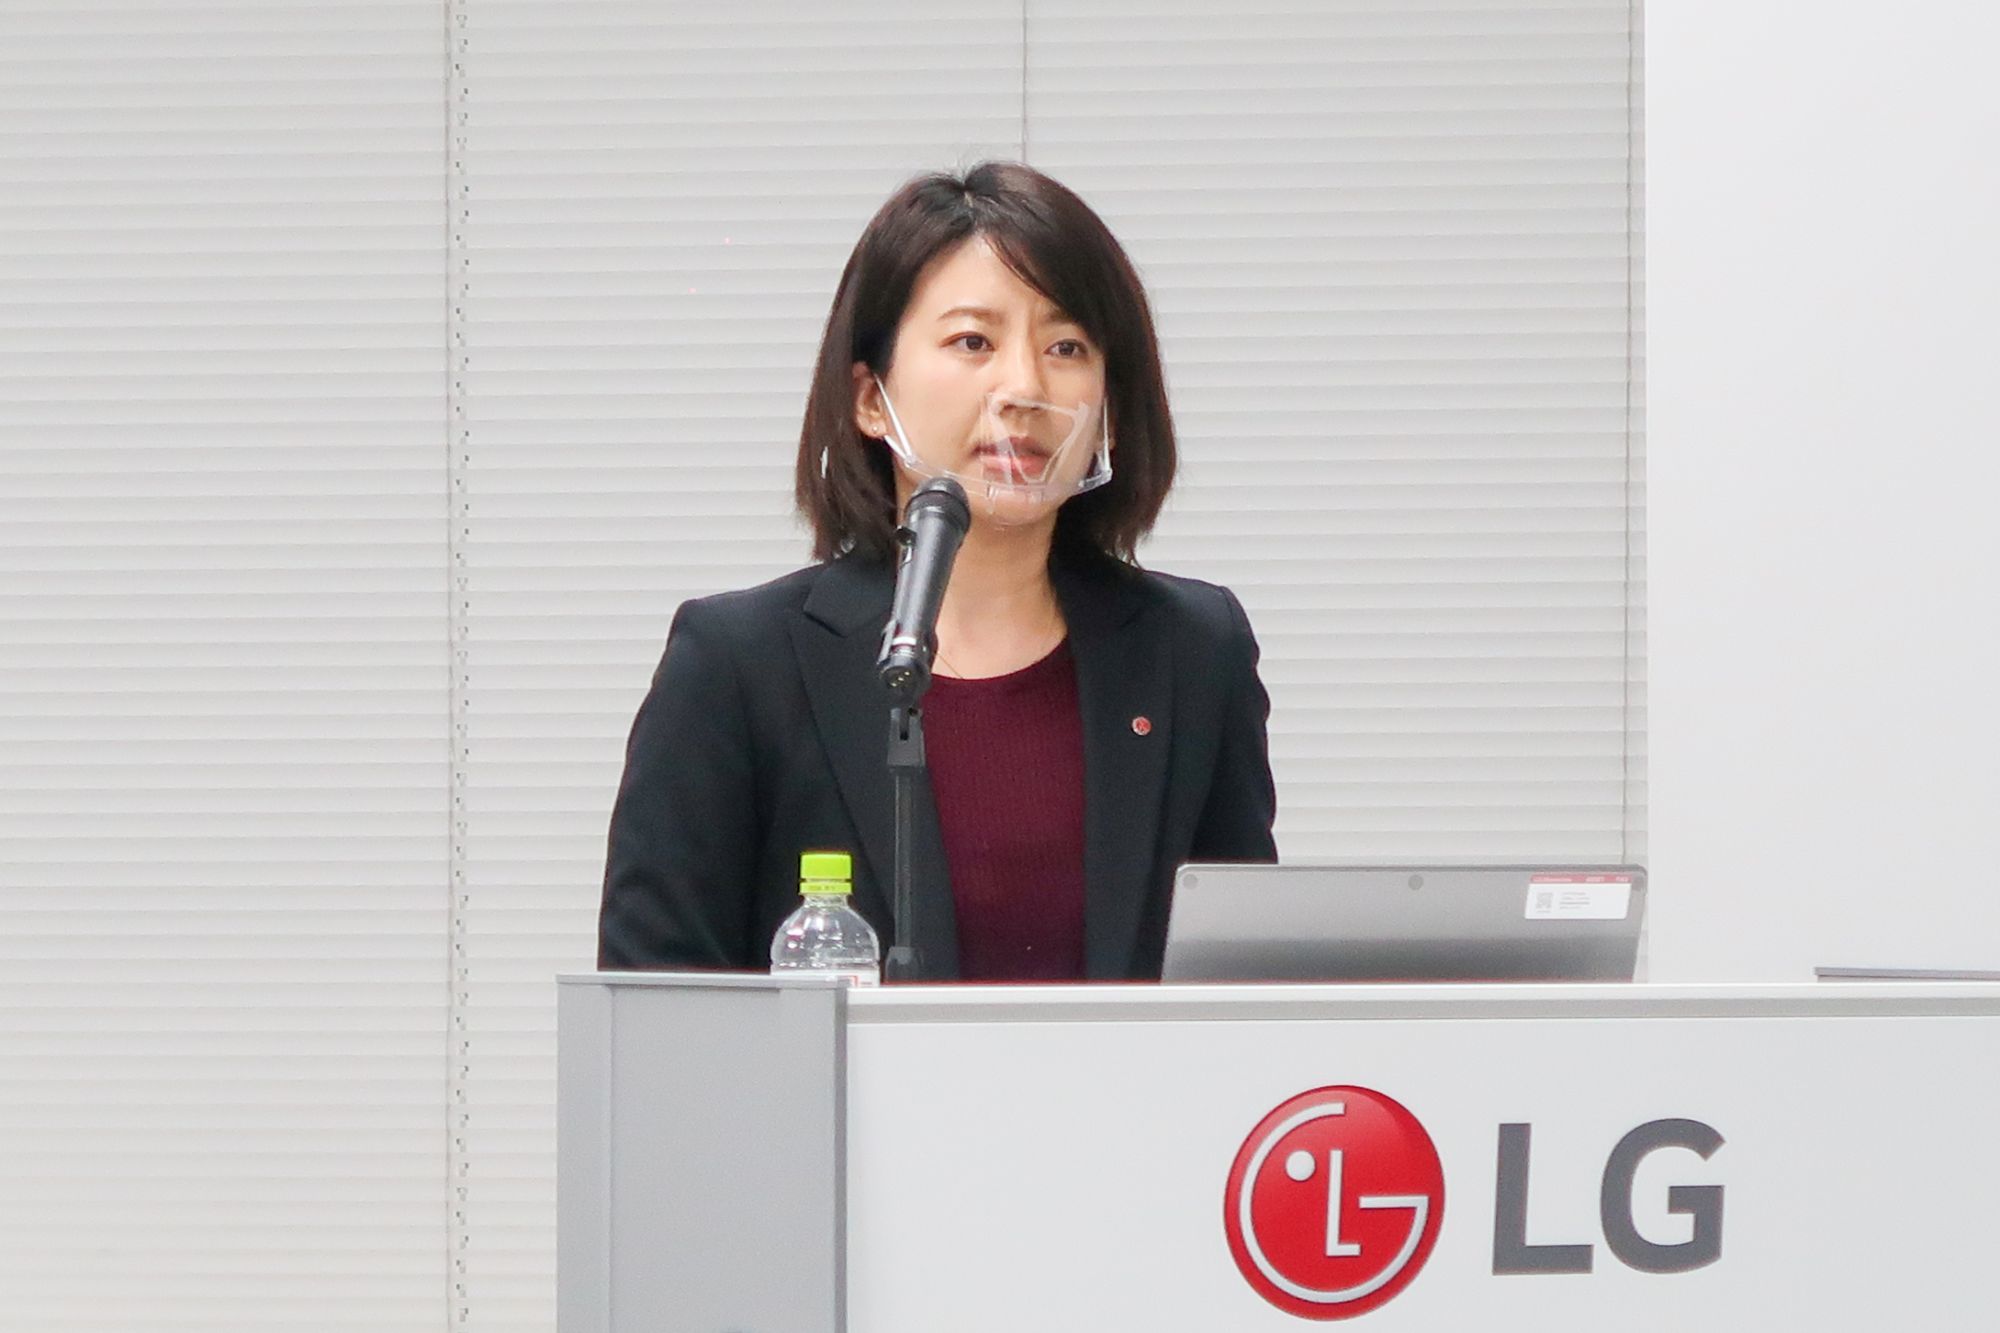 LGのスマートフォンの新たなテーマについて説明するLGエレクトロニクス・ジャパン  マーケティングチーム マーケティングコミュニケーションパート モバイルコミュニケーション担当の藤盛智子氏